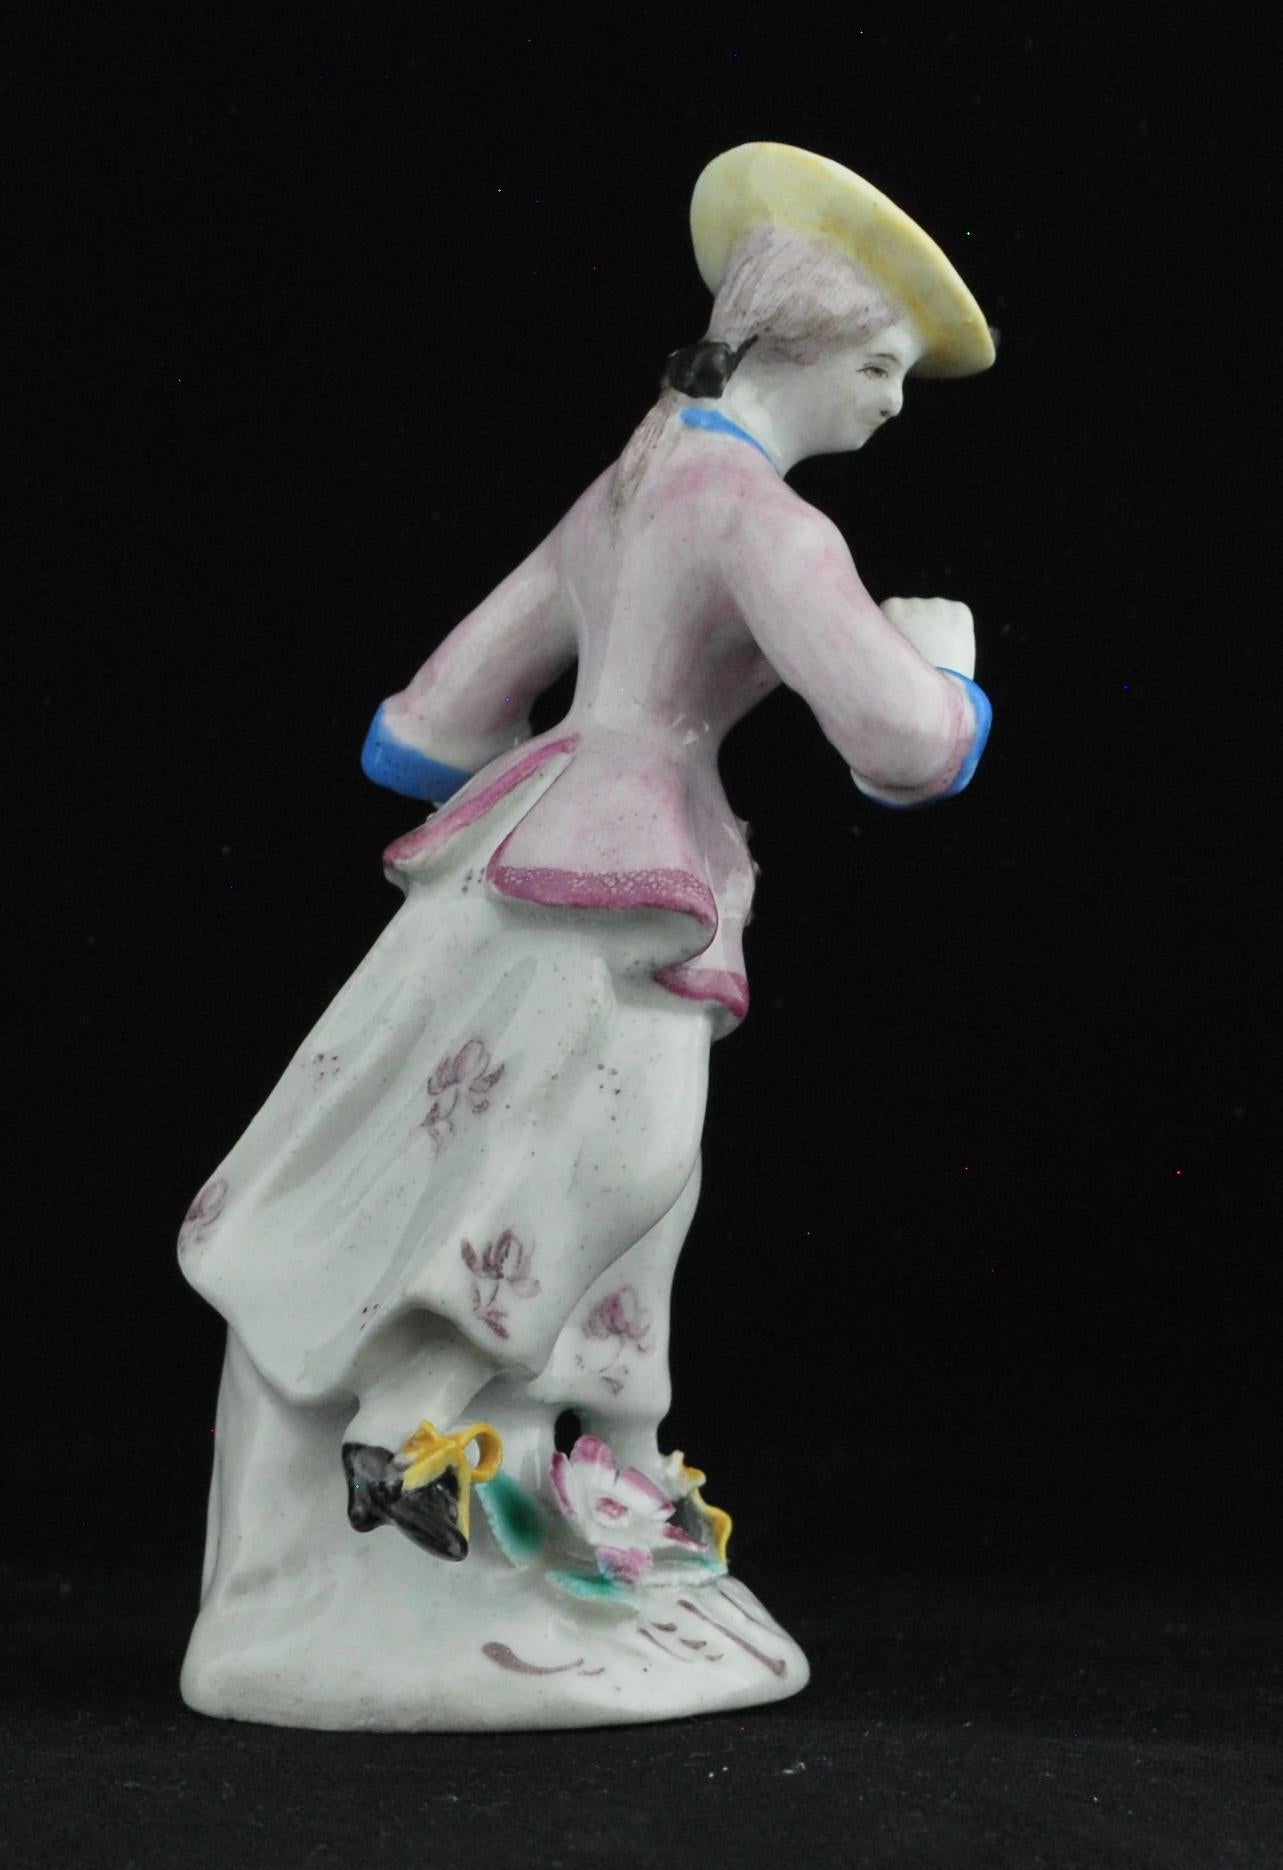 Petite figure d'une jeune femme portant une jupe blanche tachetée de puce, légèrement soulevée de la main gauche, une veste rose pâle avec col et poignets bleus opaques typiques de l'arc.

Nous l'avons appelée 